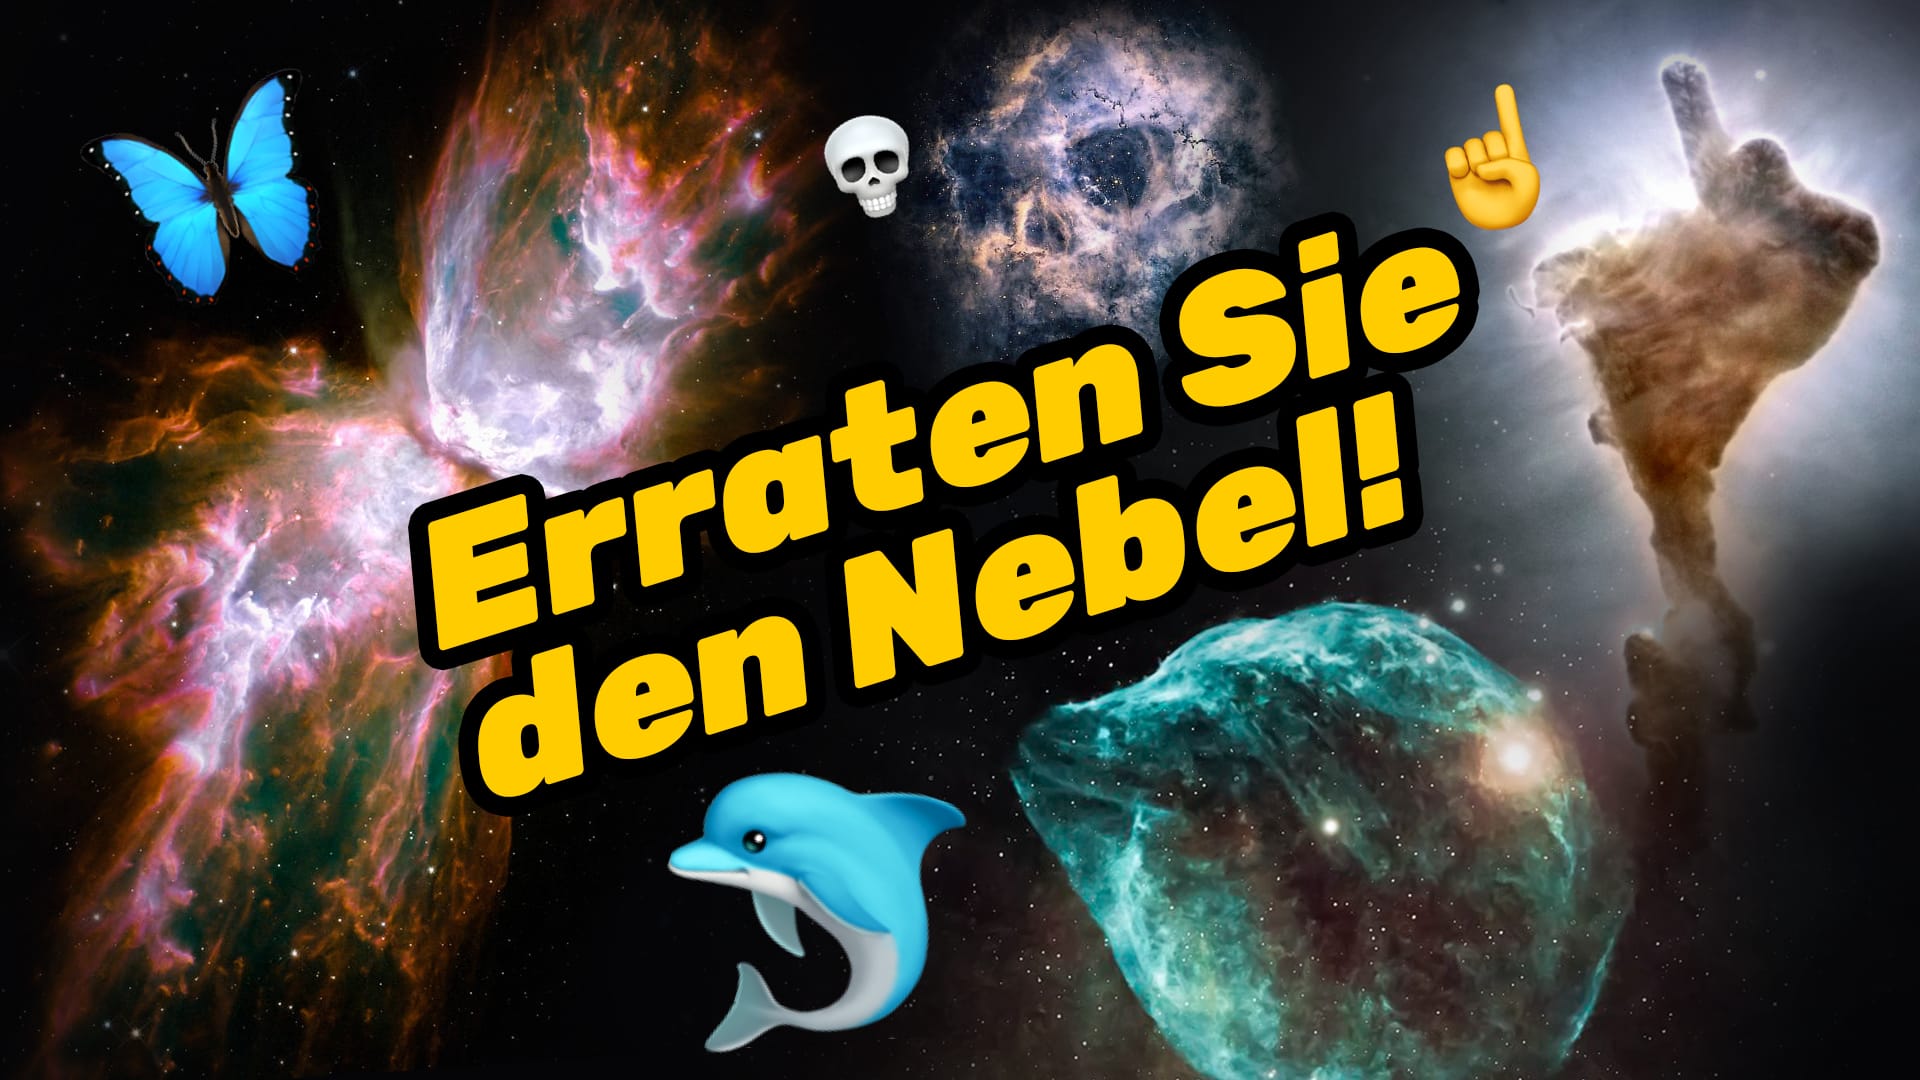 Guess the Nebula!